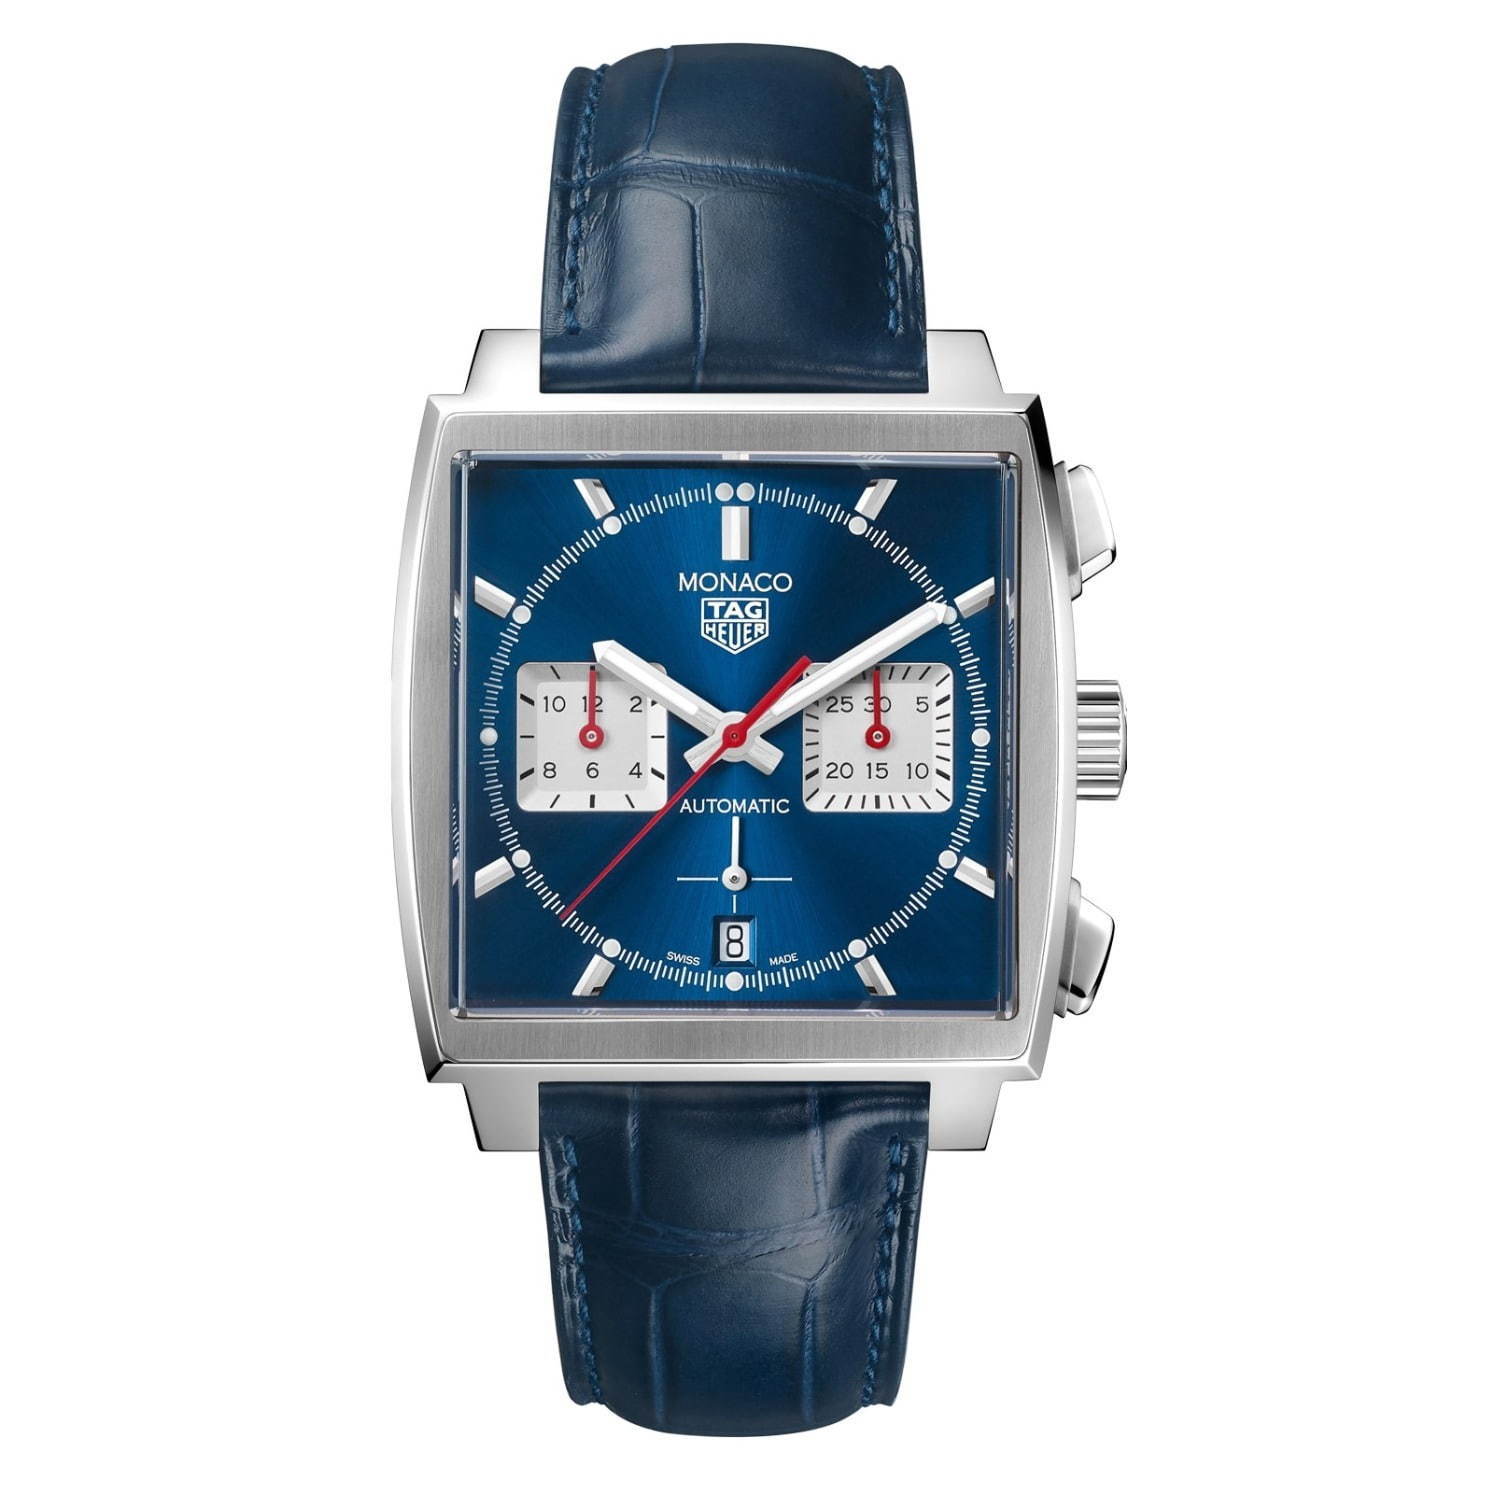 タグ・ホイヤーの腕時計「モナコ」に新作、最新自社製ムーブメント搭載